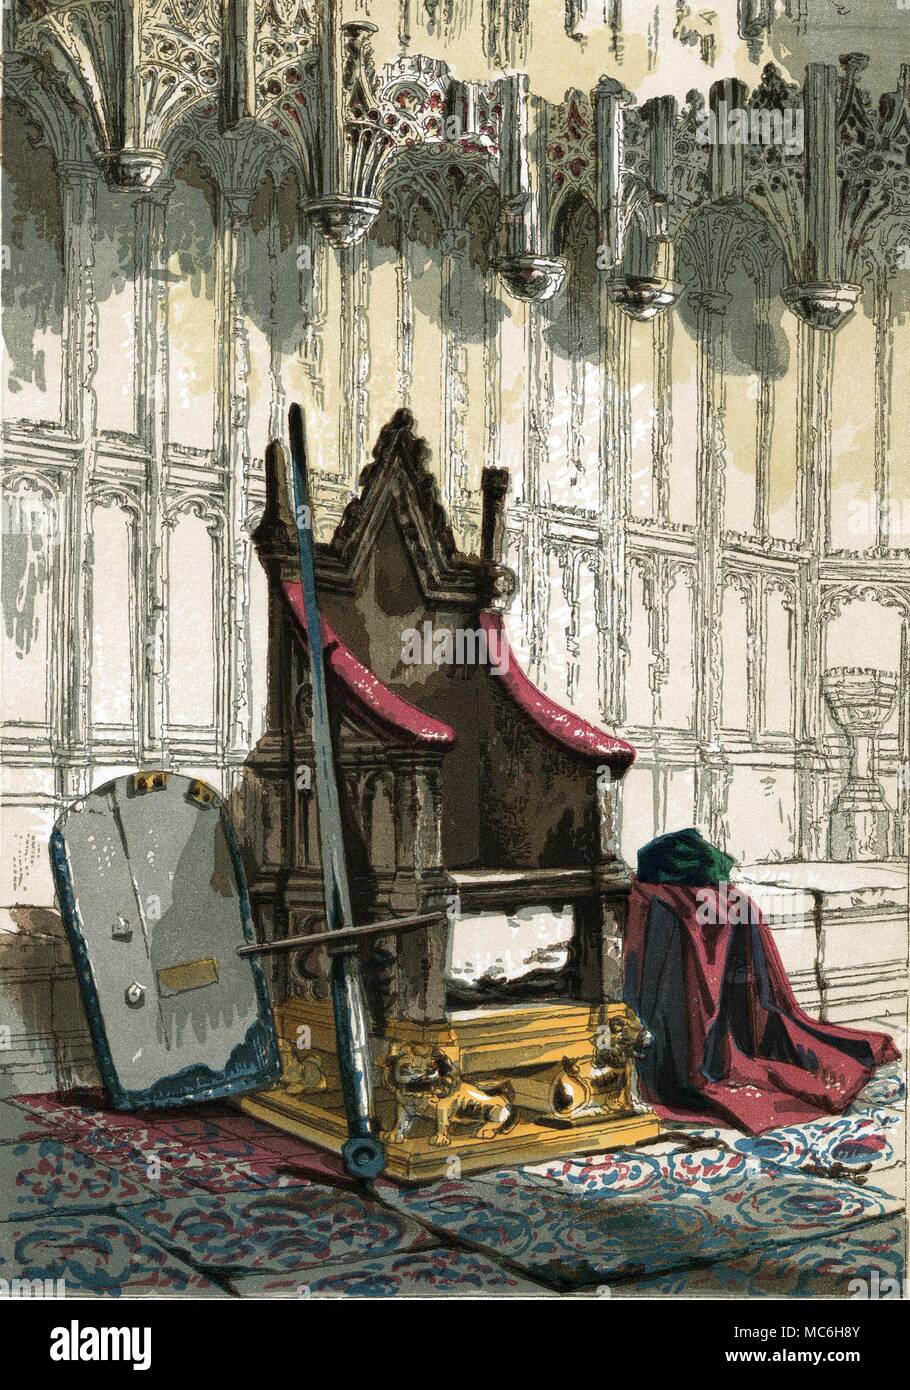 Dogana britannica la cosiddetta pietra di incoronazione, o pietra di Scone, nella sede di incoronazione nella Westminster Abbey. Stampa Chromozylographic, dalla vecchia Londra, 1863. Foto Stock